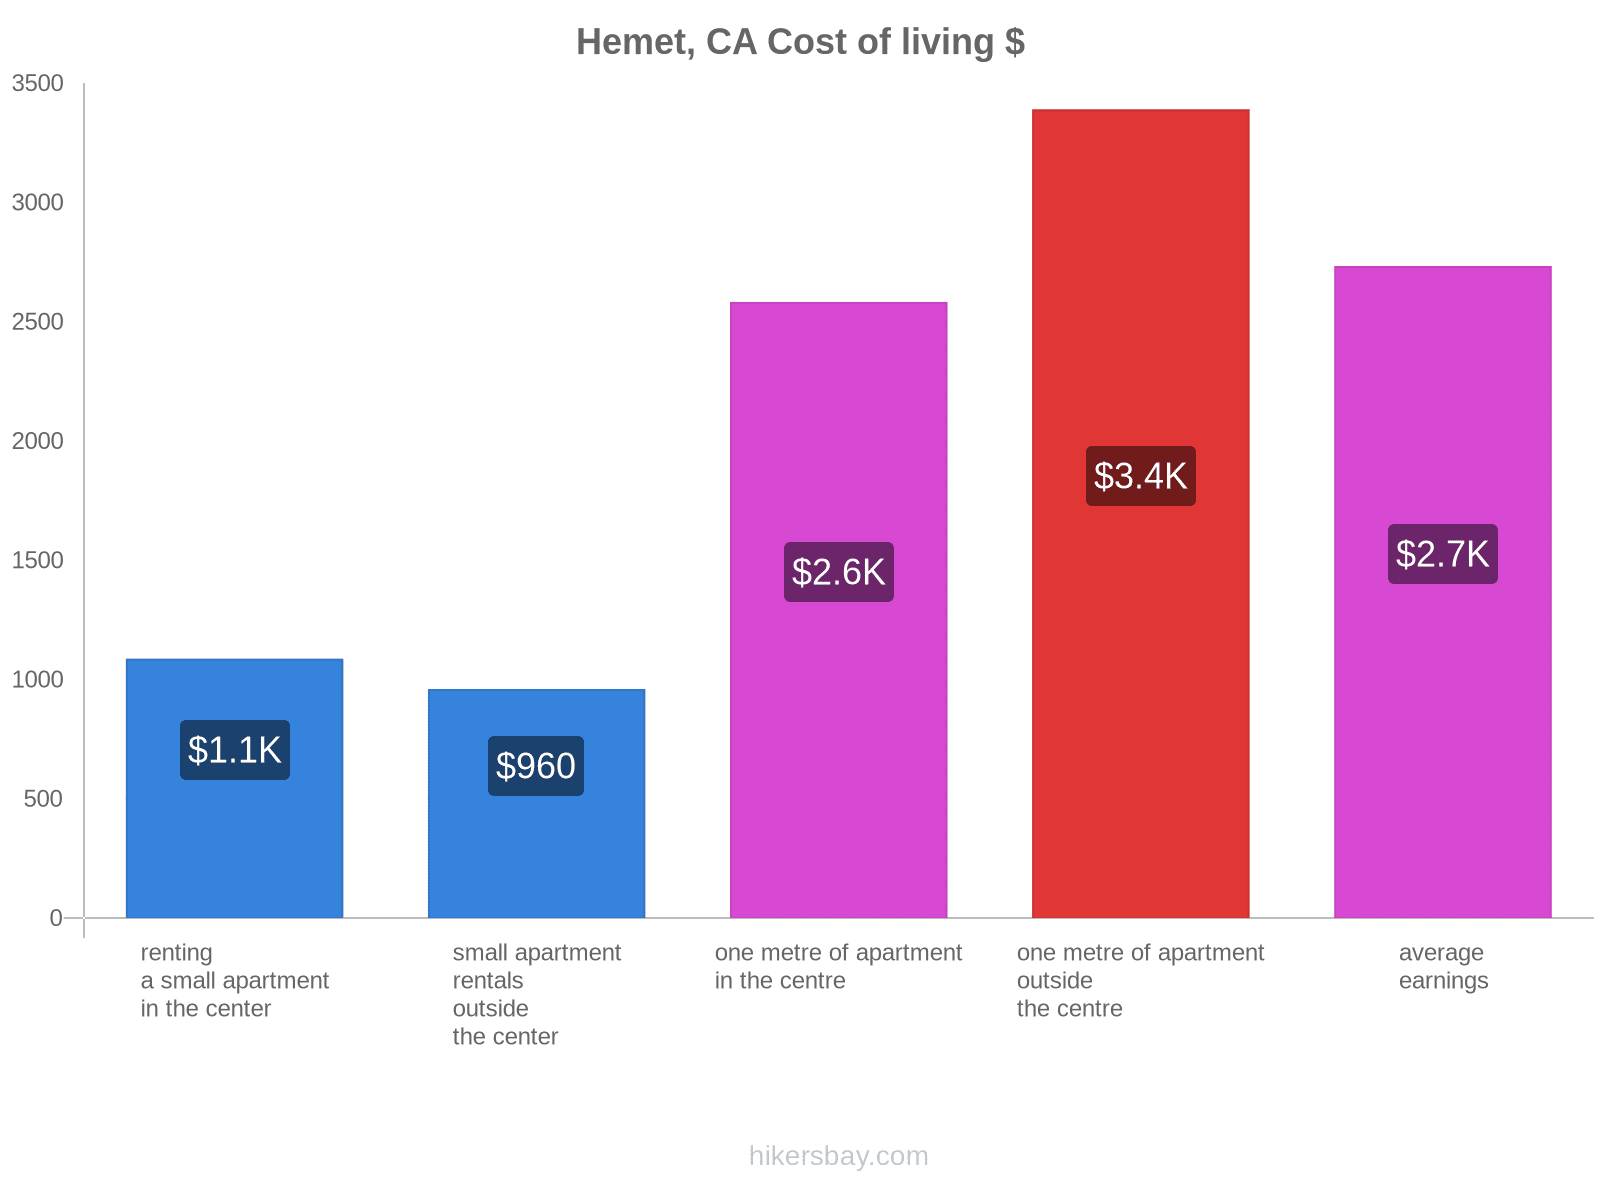 Hemet, CA cost of living hikersbay.com